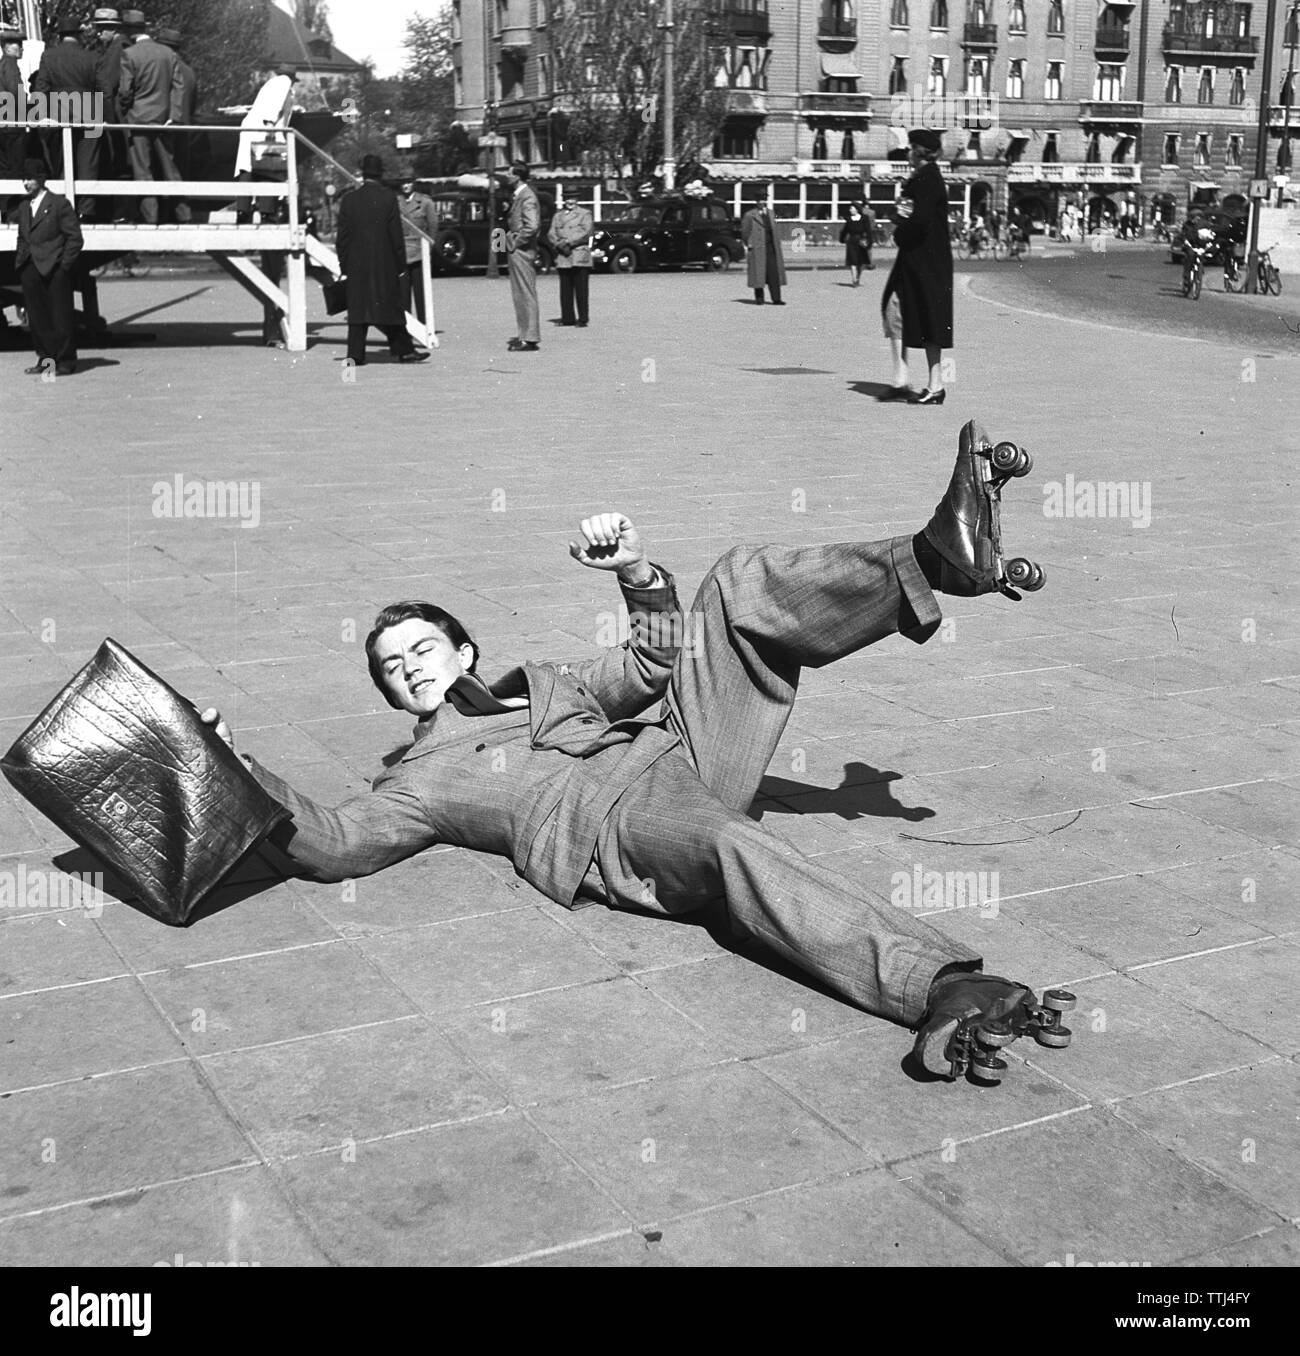 Spaß in den 1940er Jahren. Ein junger Mann auf rollerskates hat seine Balance und liegt auf dem Boden verloren. Schweden 1943. Kristoffersson ref D 60-3 Stockfoto